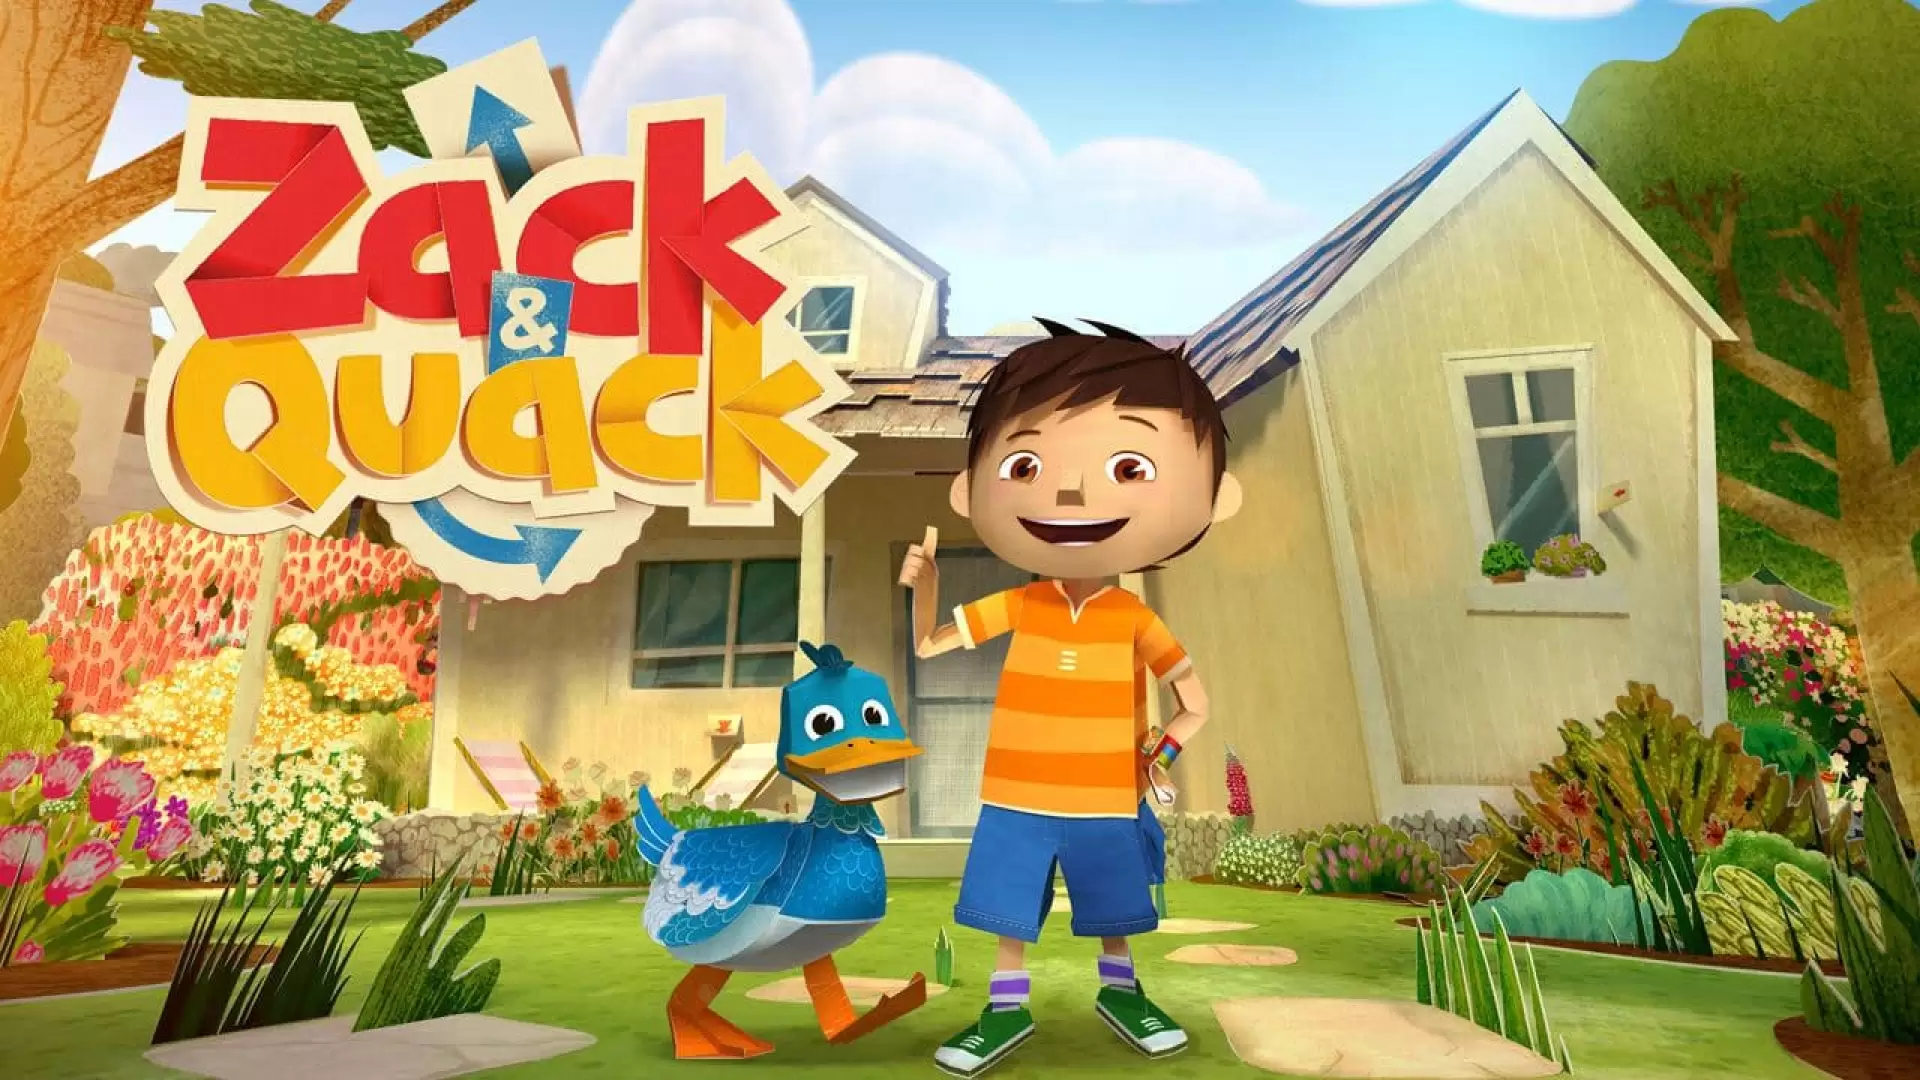 دانلود انیمیشن Zack and Quack 2012 (زک و کواک)